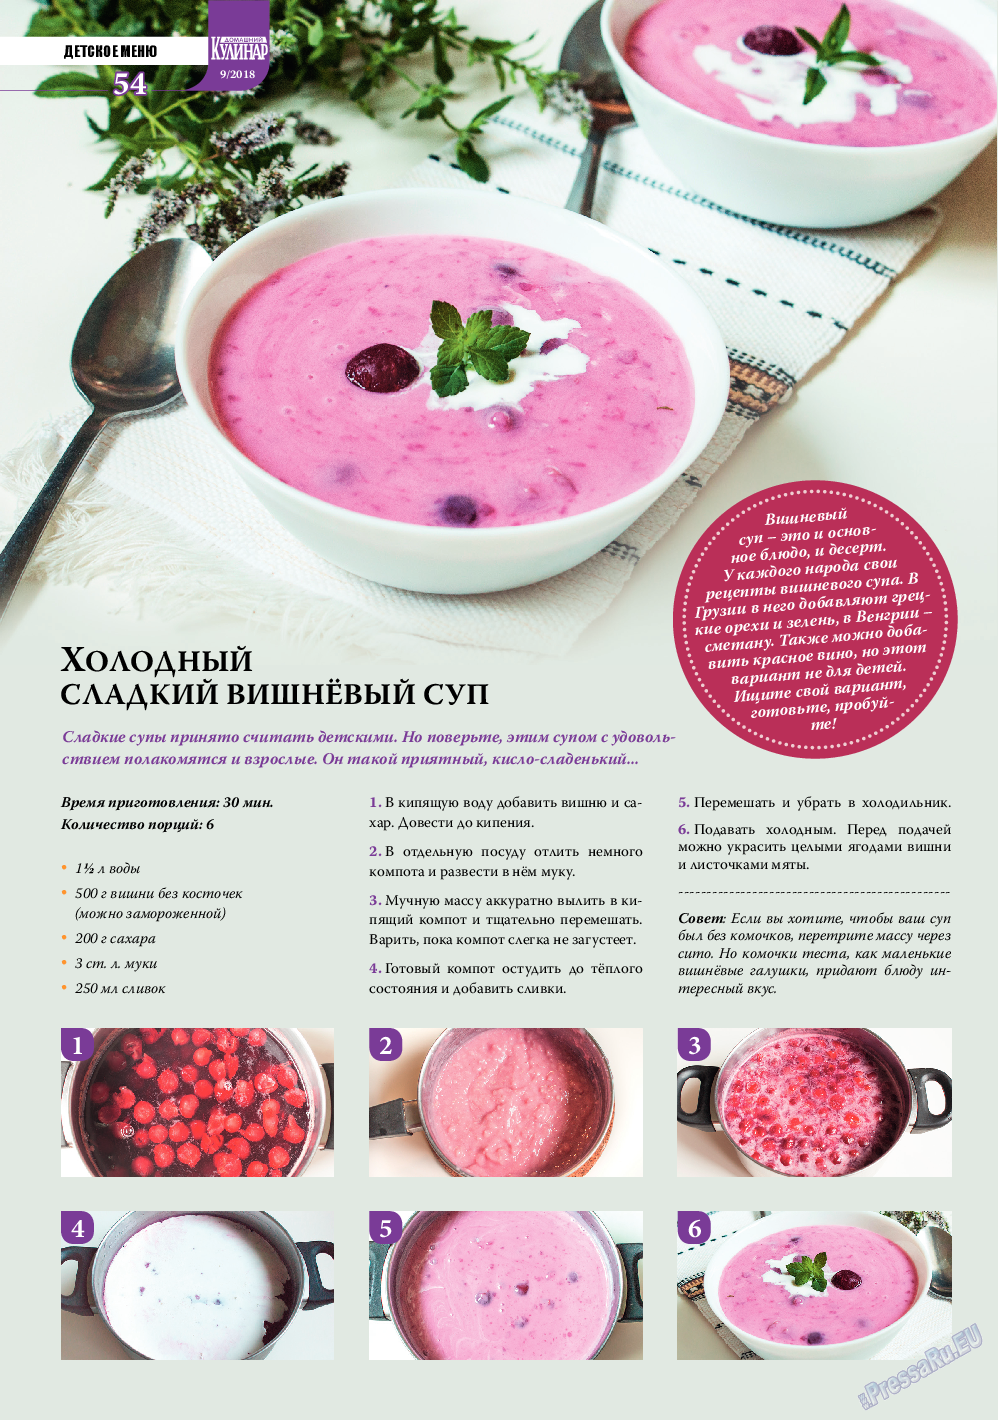 Домашний кулинар, журнал. 2018 №9 стр.54